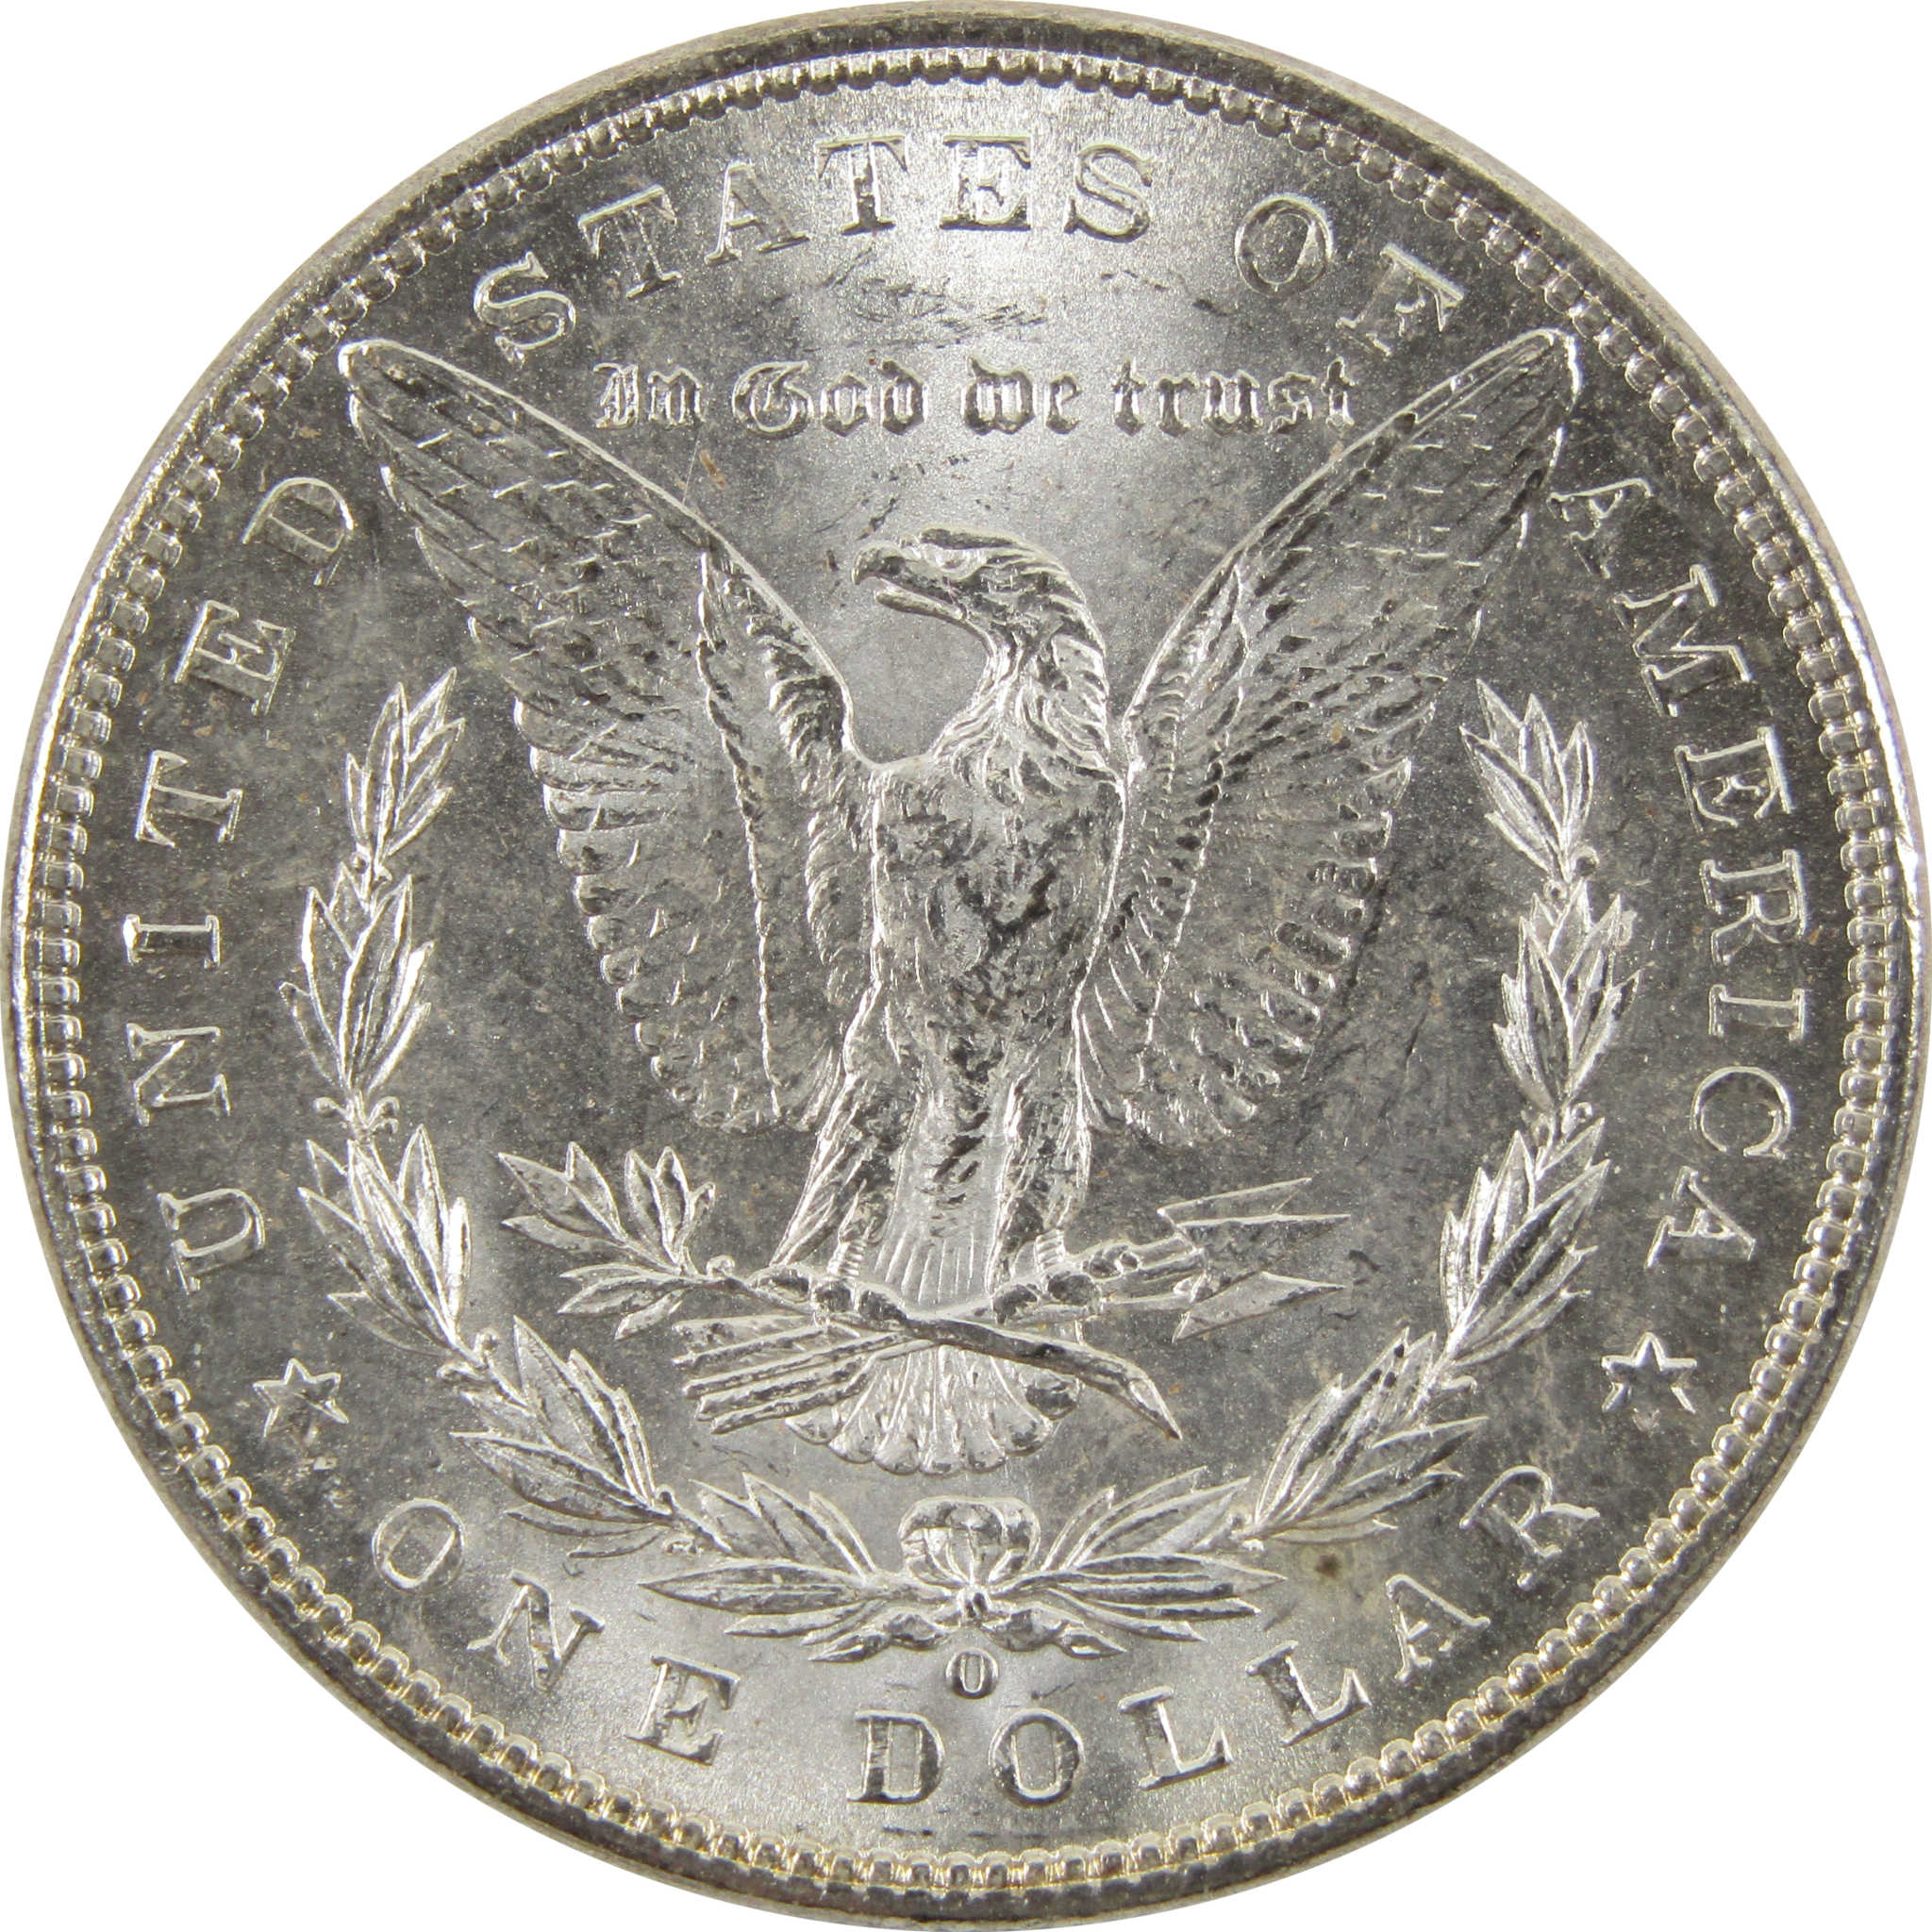 1901 O Morgan Dollar BU Uncirculated 90% Silver $1 Coin SKU:I10471 - Morgan coin - Morgan silver dollar - Morgan silver dollar for sale - Profile Coins &amp; Collectibles